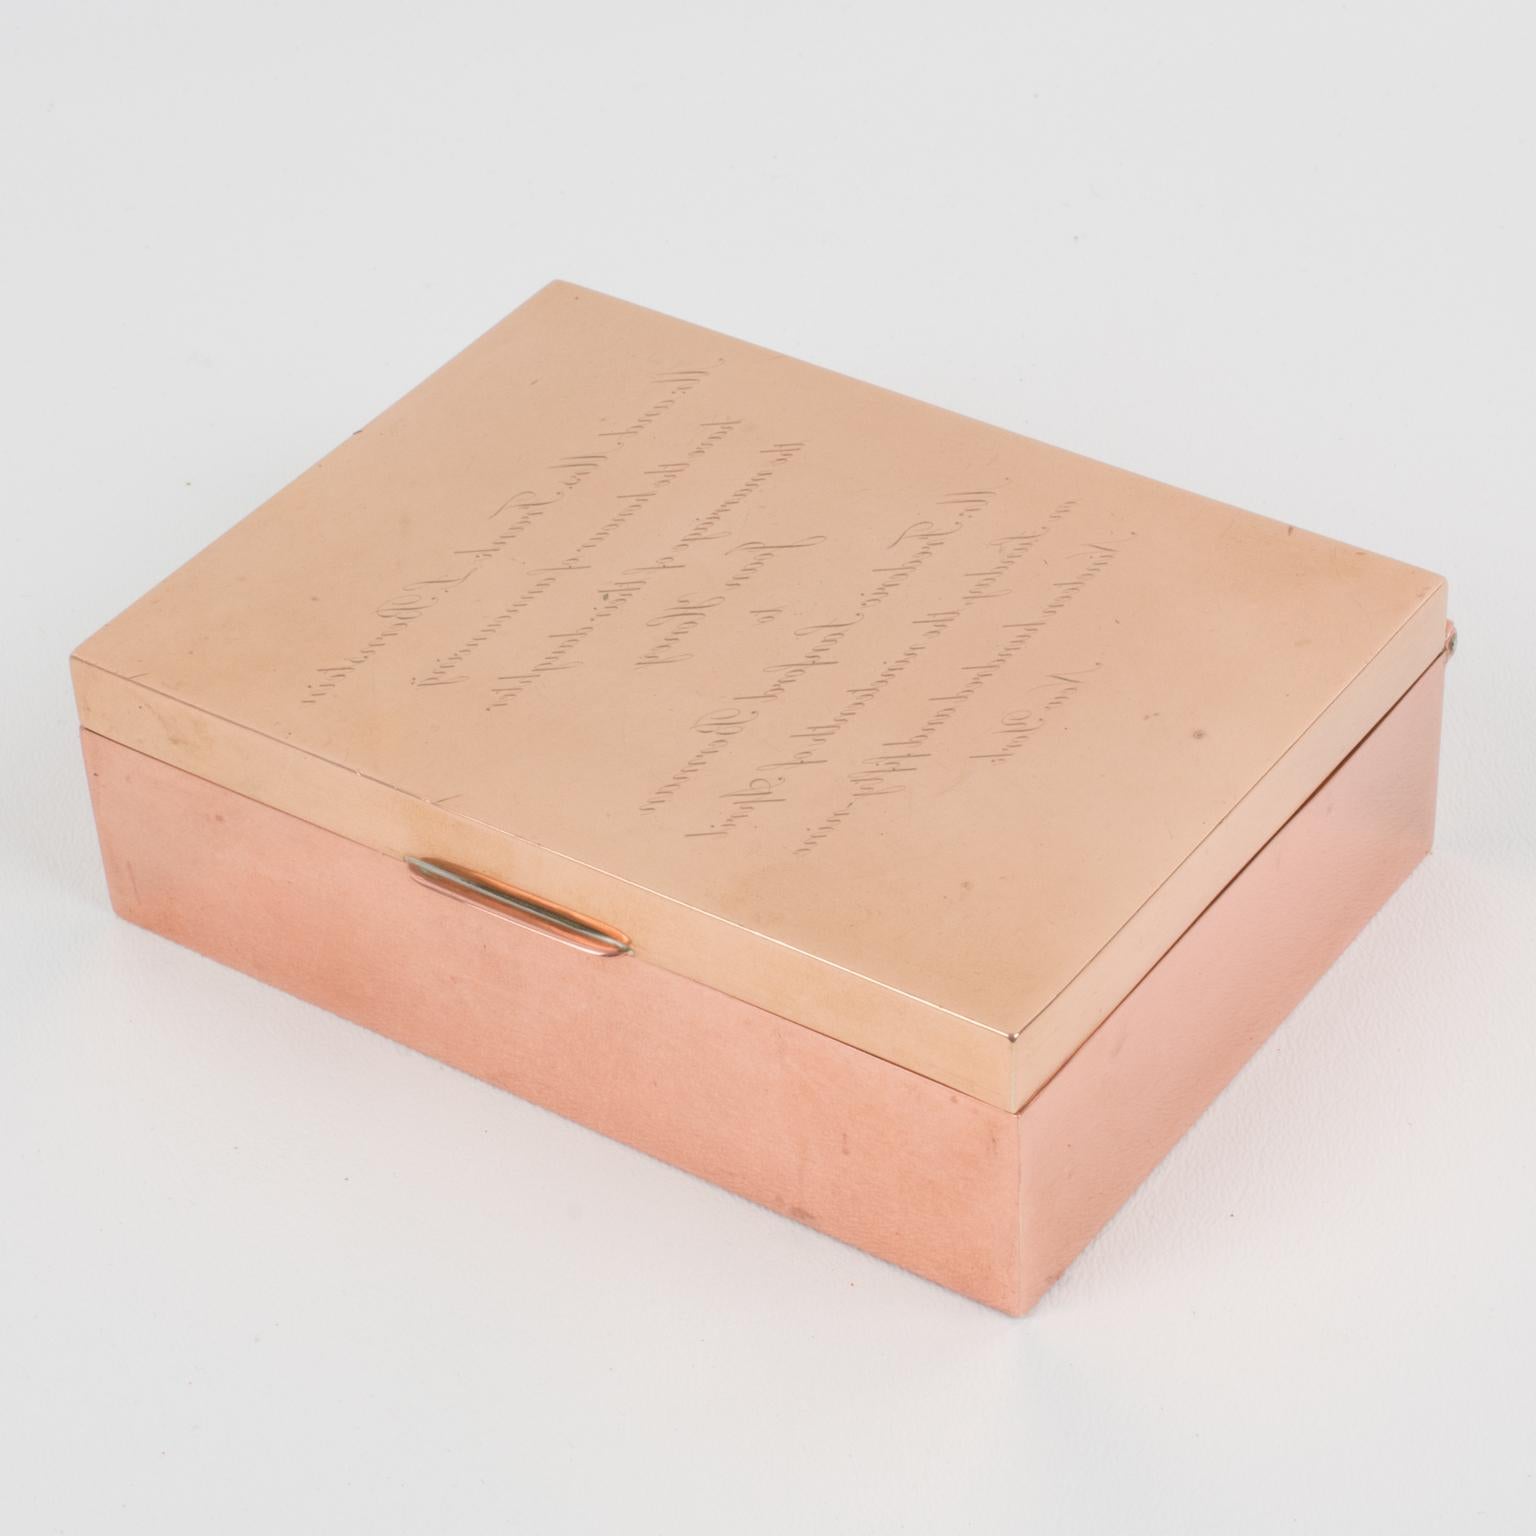 Cartier Paris fertigte diese raffinierte Schmuckdose aus Kupfer und Messing in den 1950er Jahren. Es handelt sich um eine Puzzleschachtel, die die Spiegelschrifttechnik* von Leonardo da Vinci verwendet. Wenn man die Schachtel genau betrachtet, ist